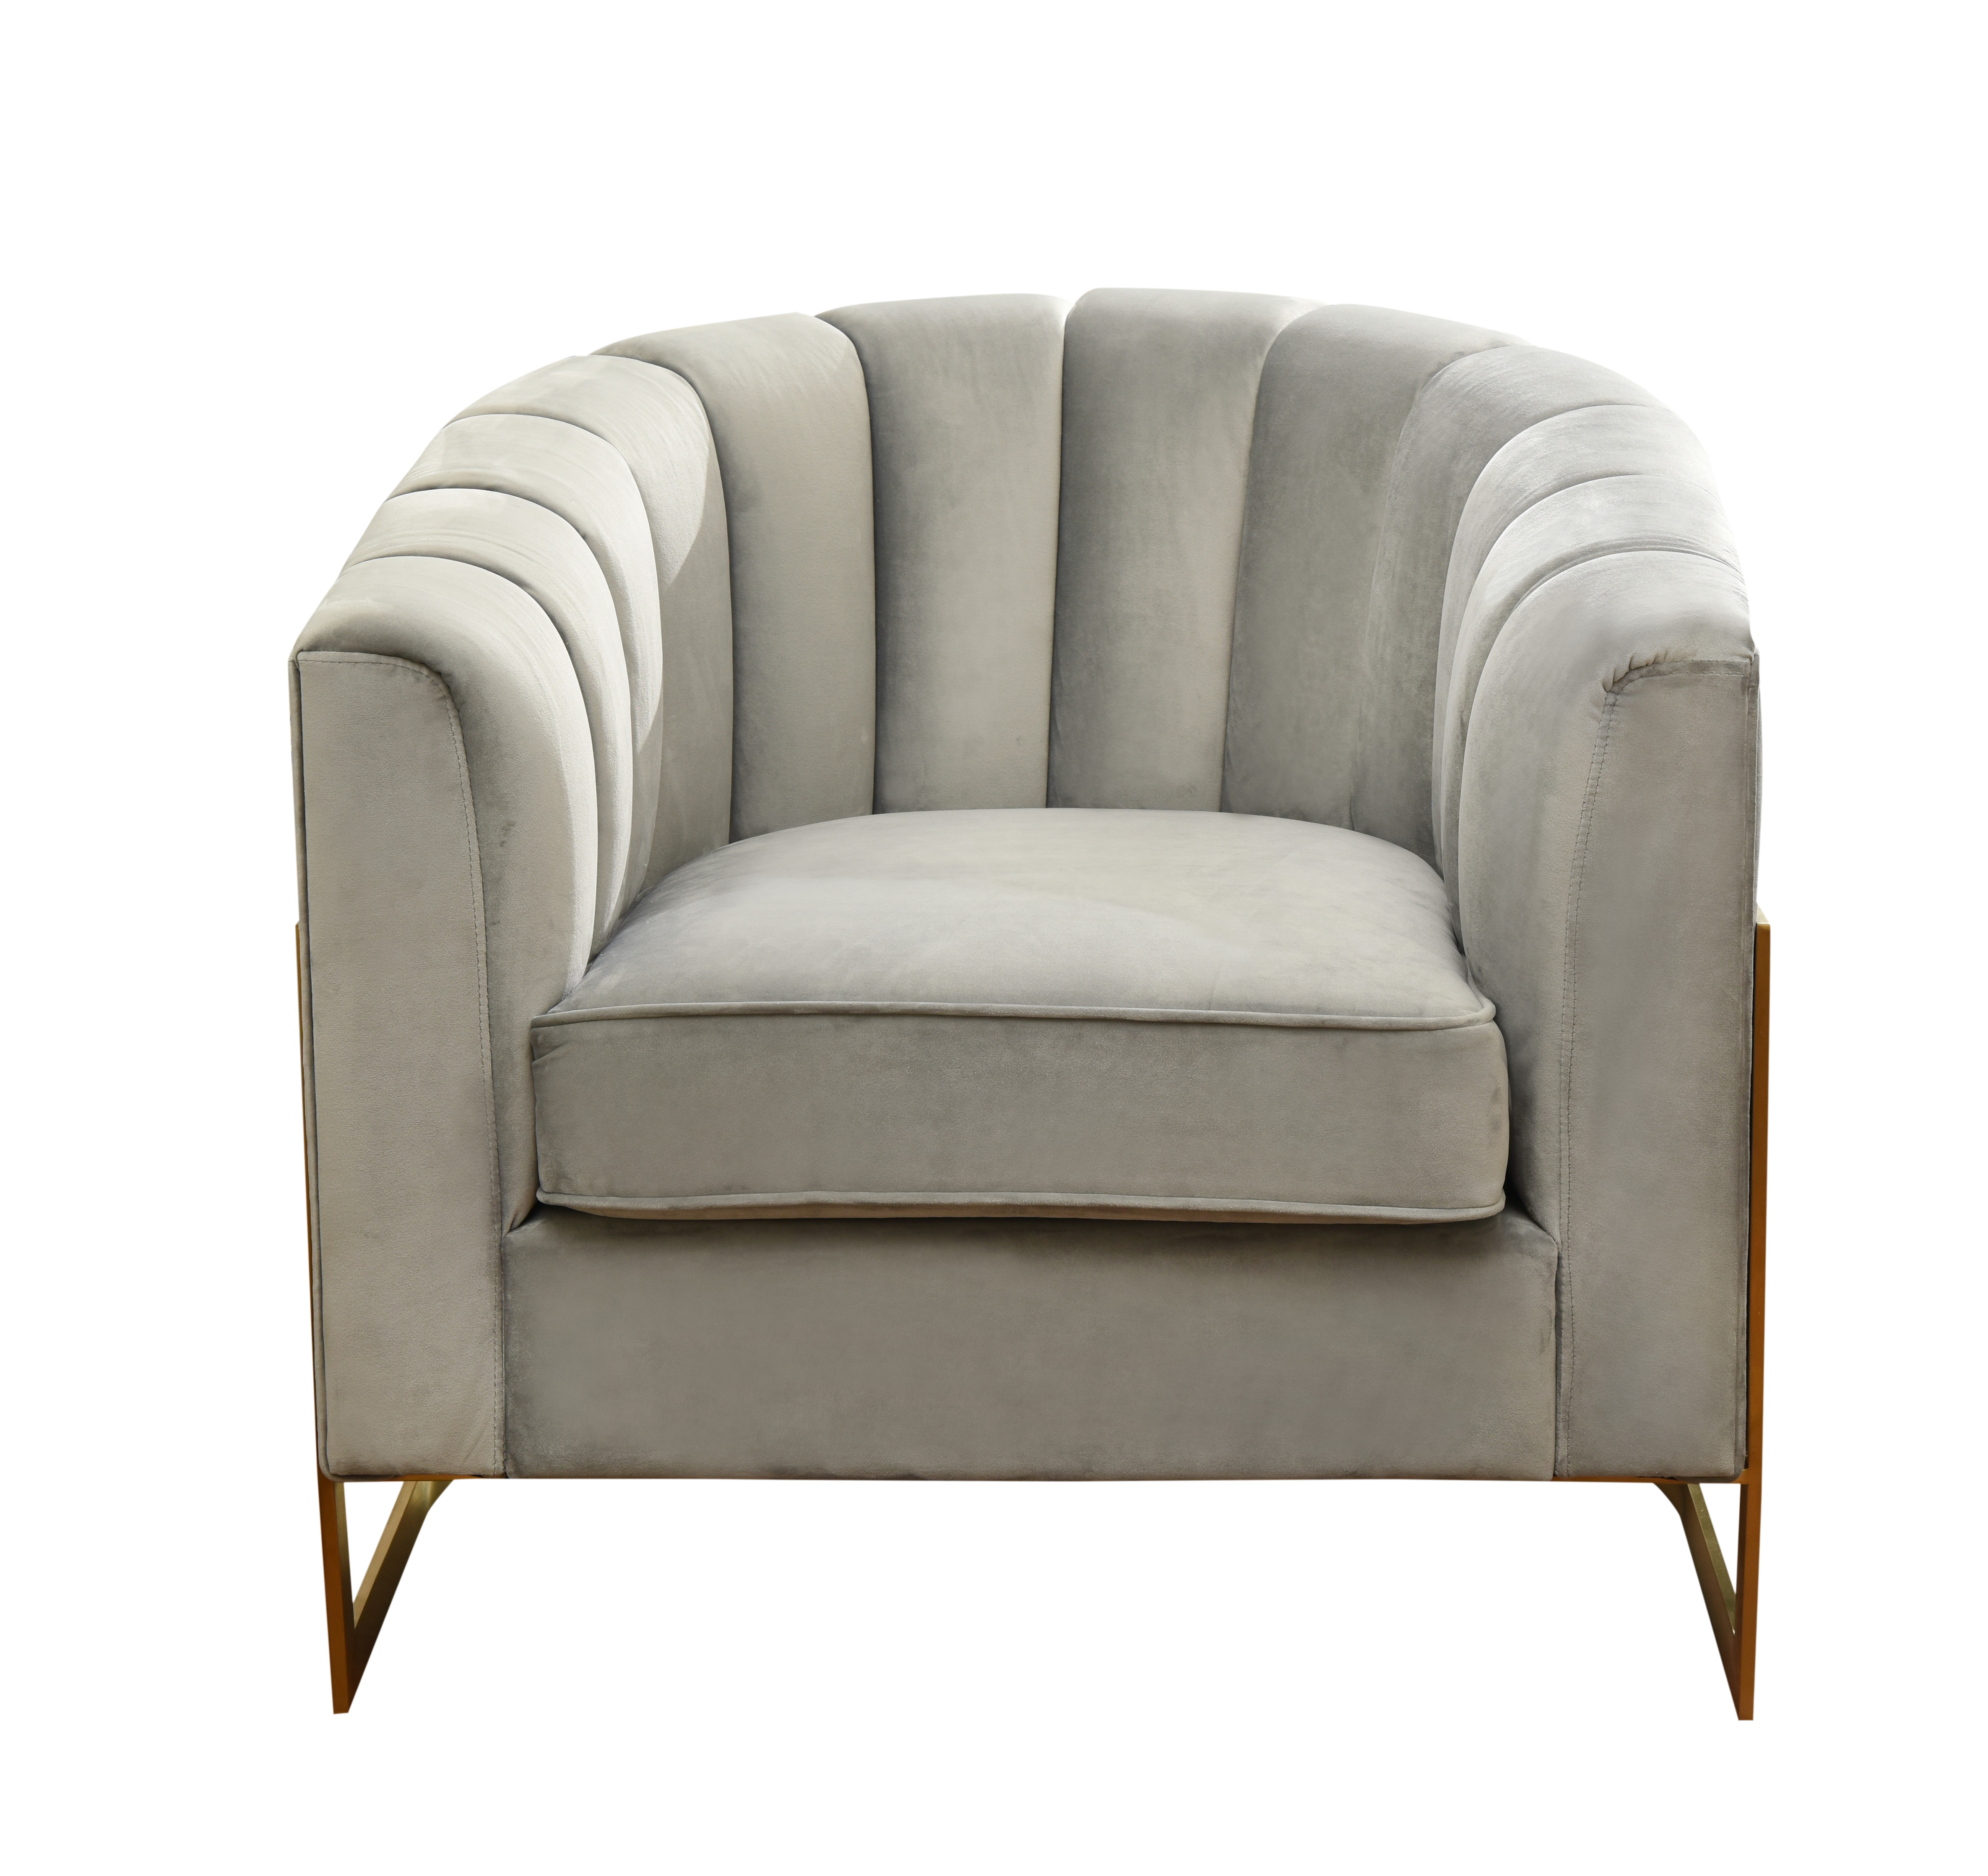 modern stainless steel golden leg velvet sofa set furniture 8 seats corner sofa